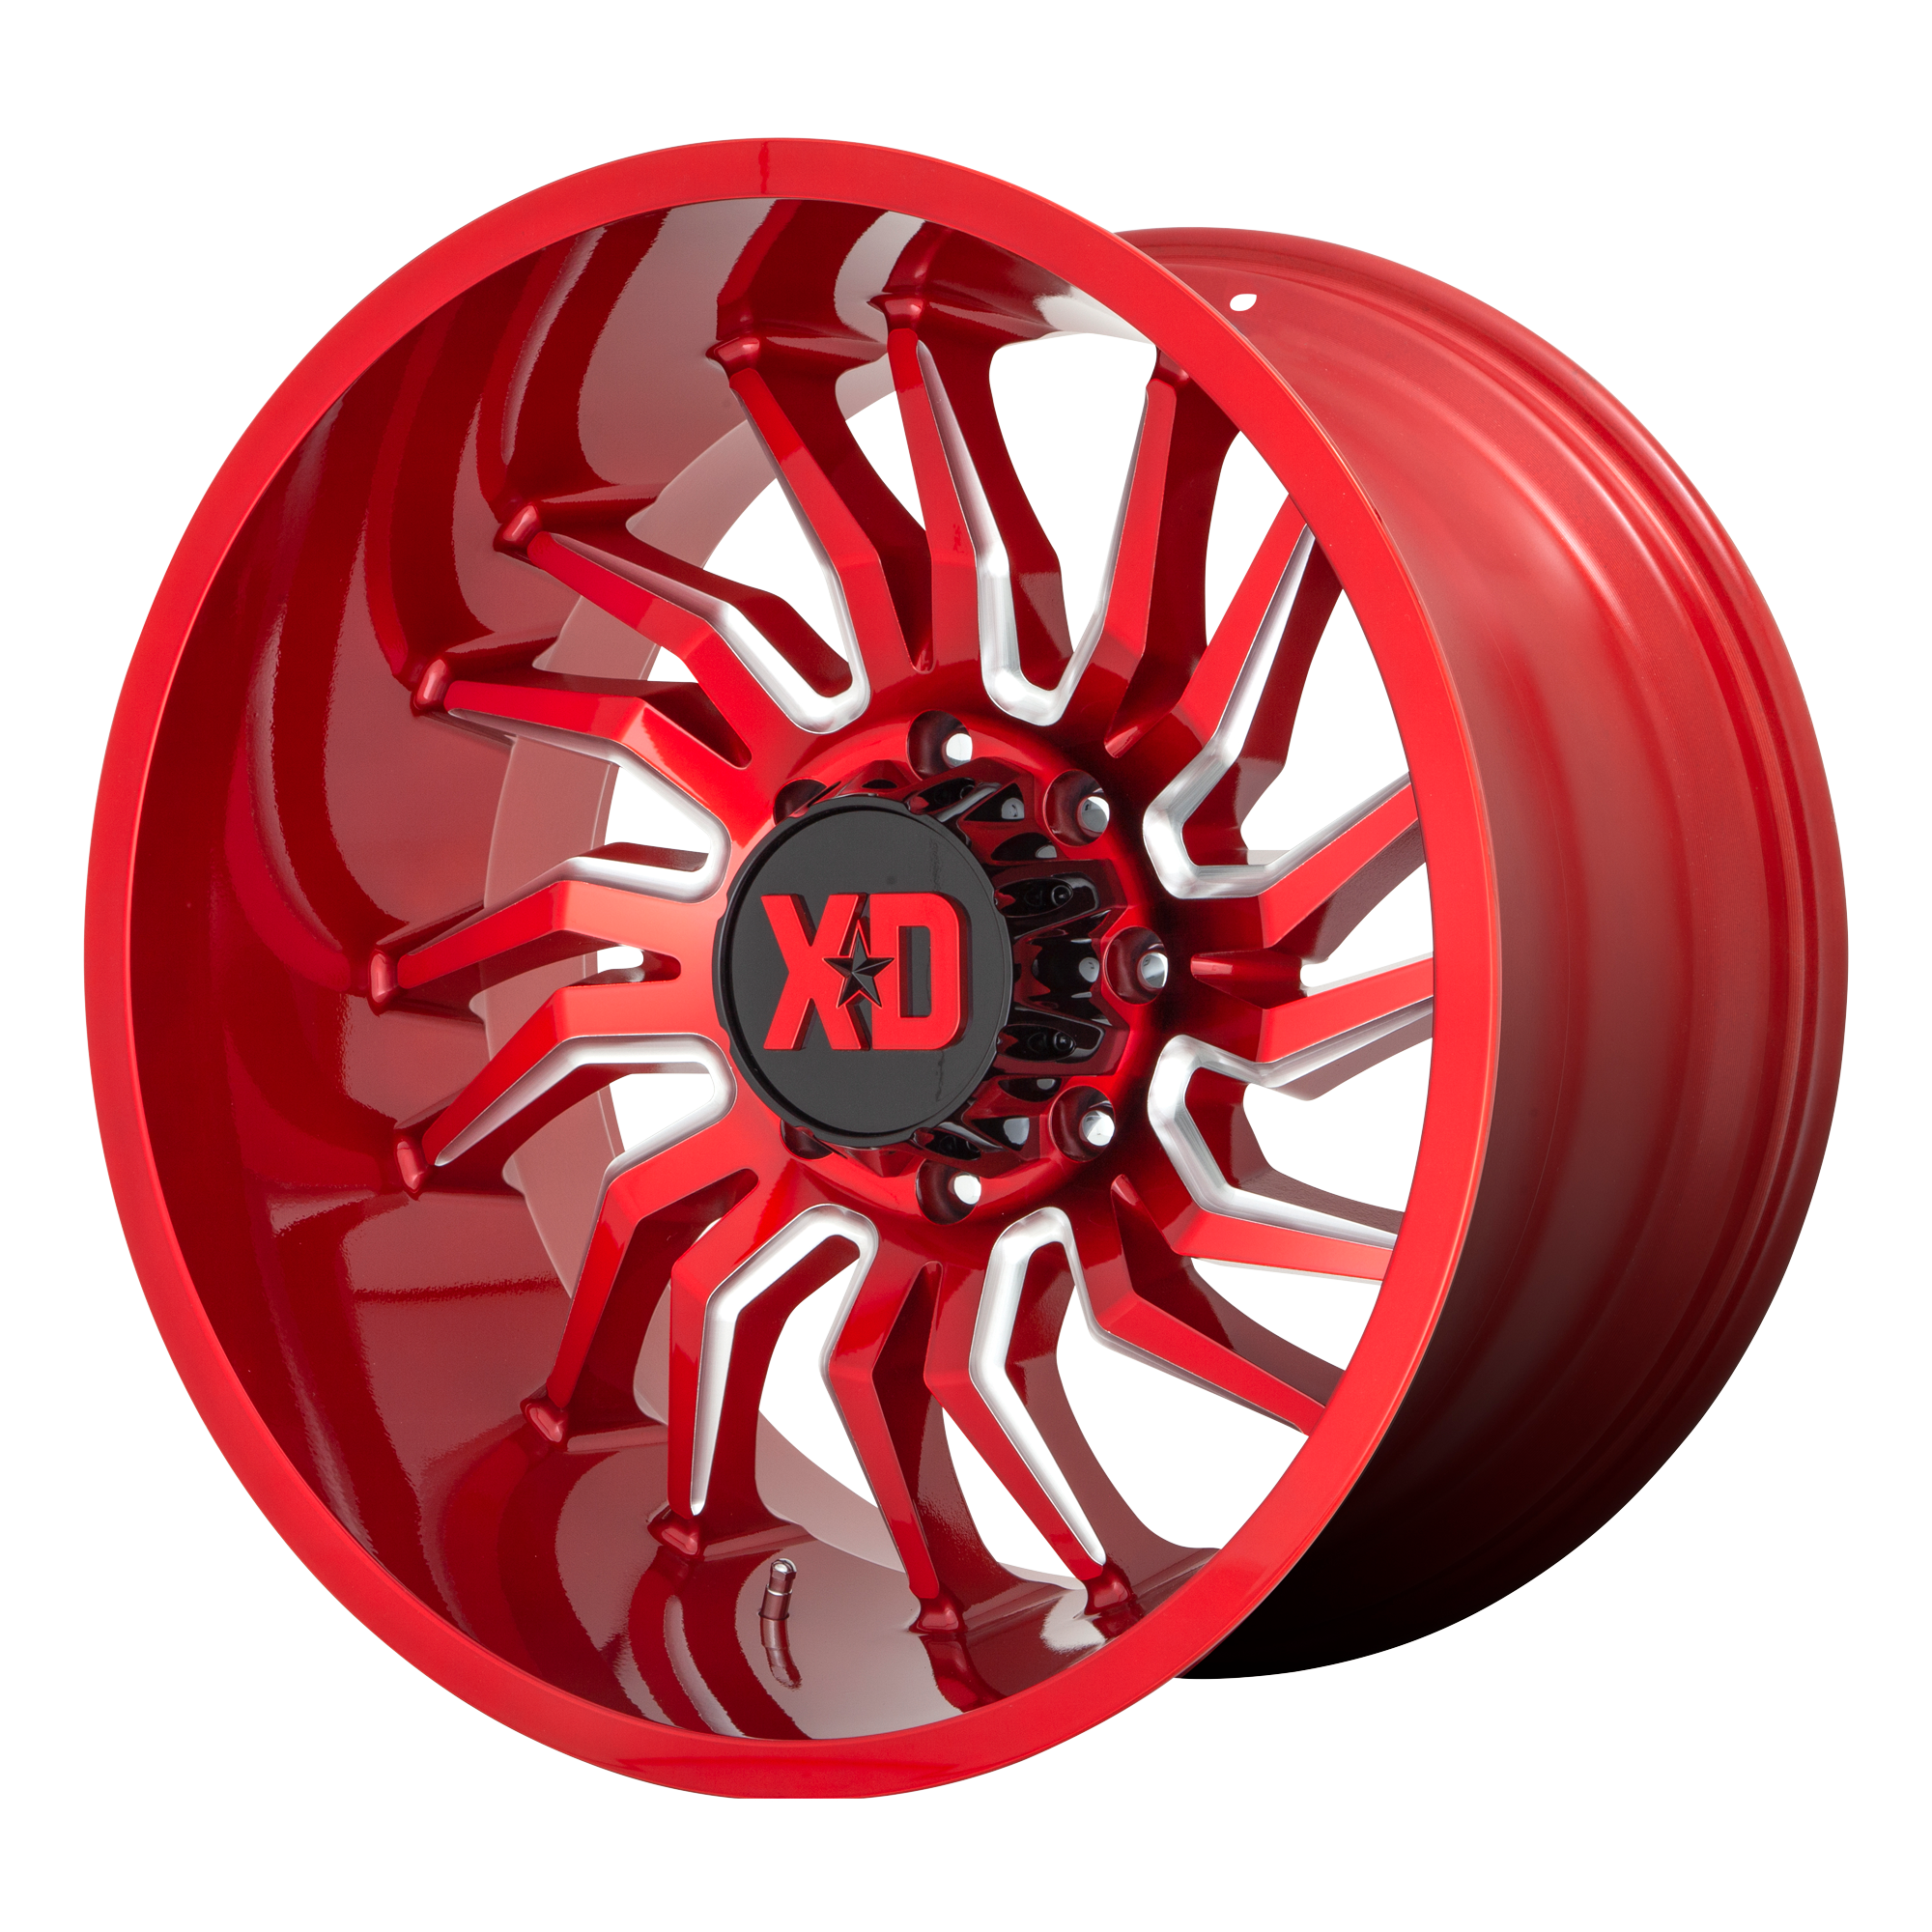 XD 22"x12" Non-Chrome Candy Red Milled Custom Wheel ARSWCWXD85822263944N